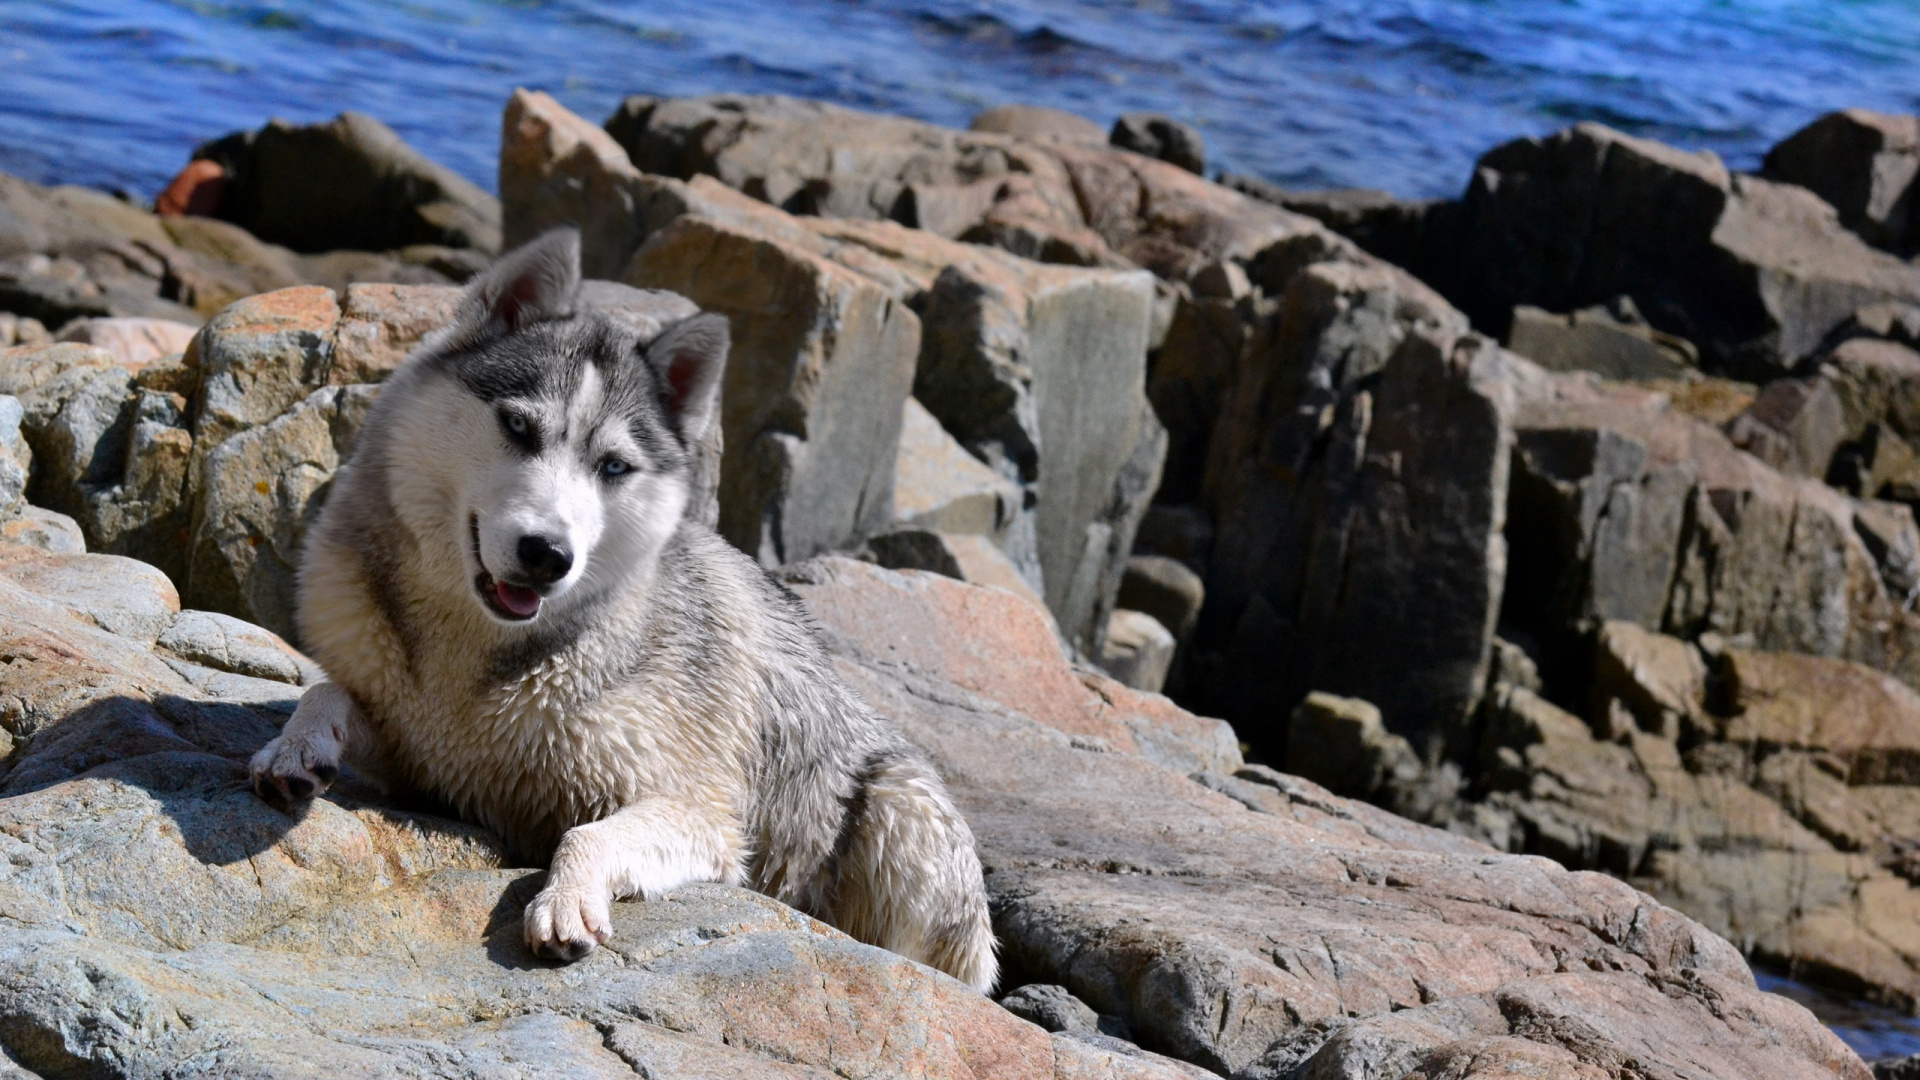 阿拉斯加雪橇犬, 小狗, 赫斯基, 格陵兰的狗, 西西伯利亚的莱卡 壁纸 1920x1080 允许